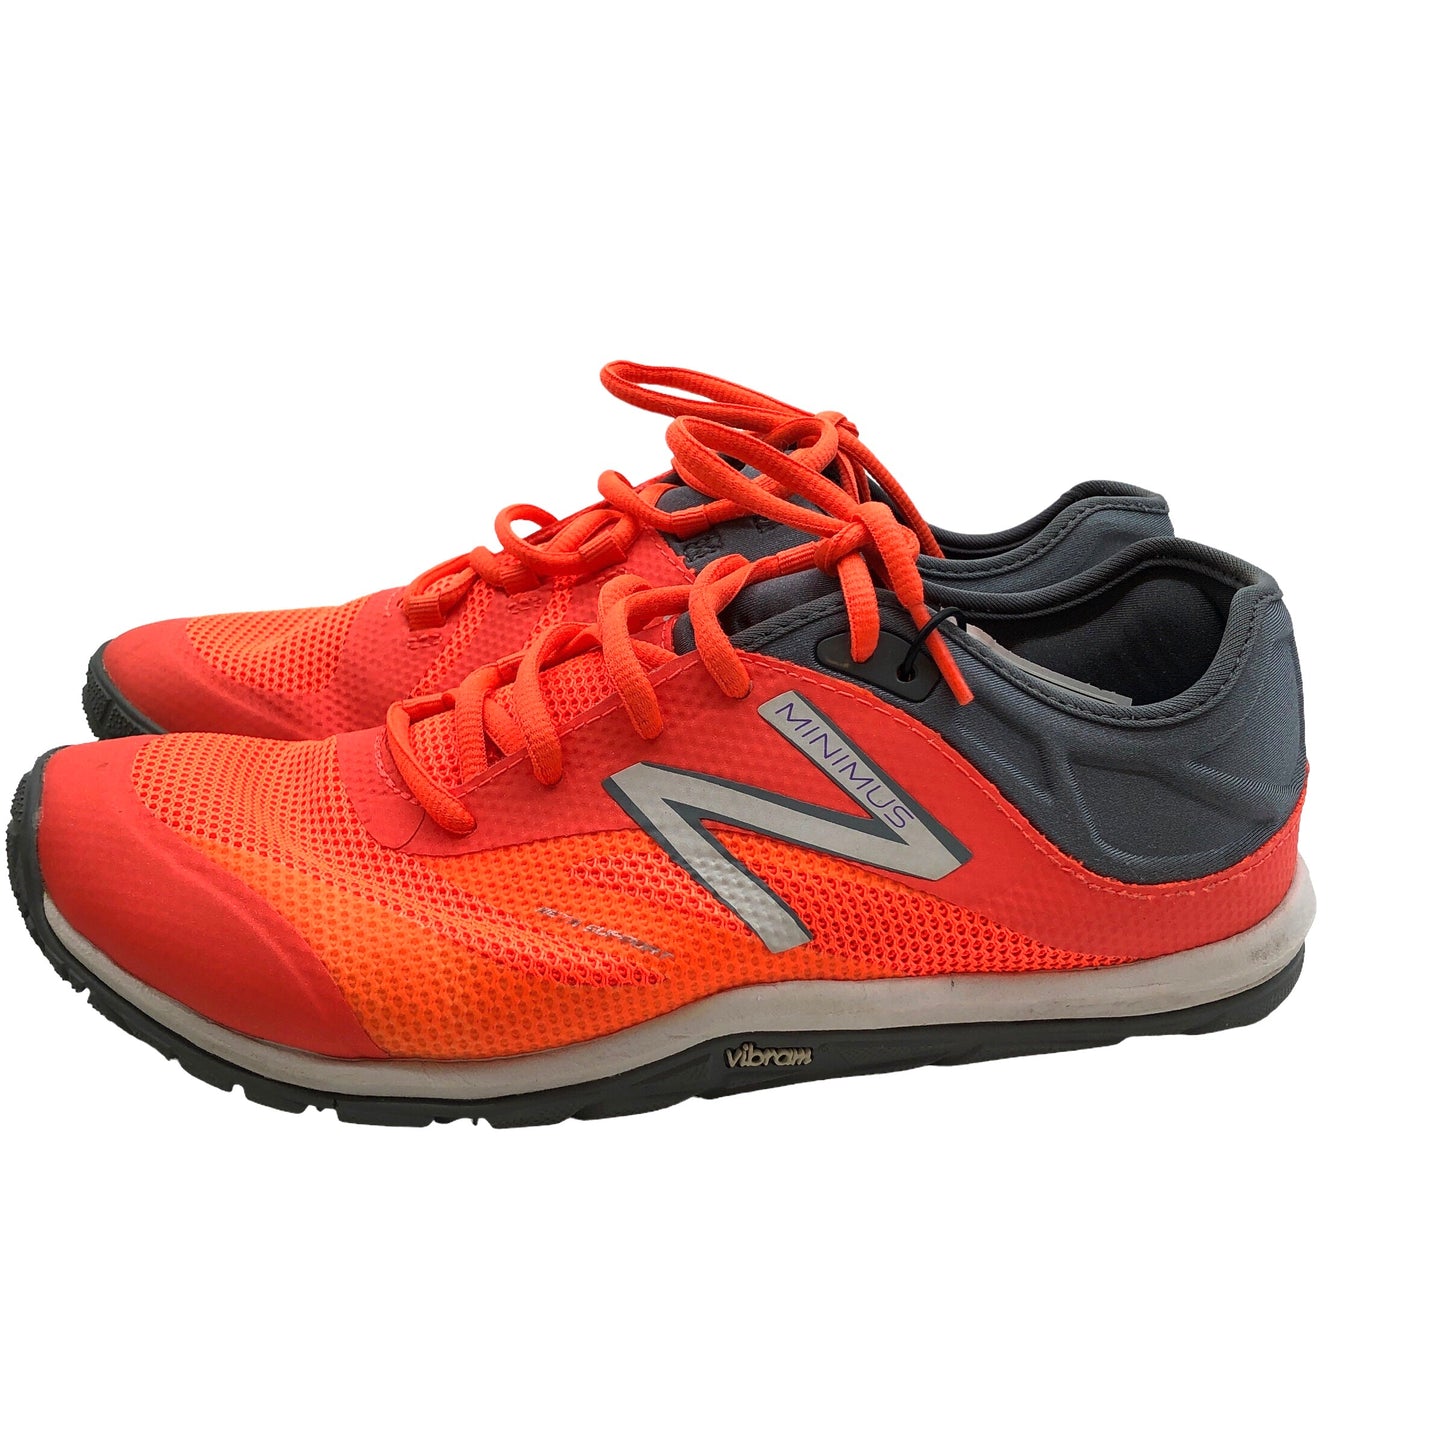 Grey & Orange Shoes Athletic New Balance, Size 9.5